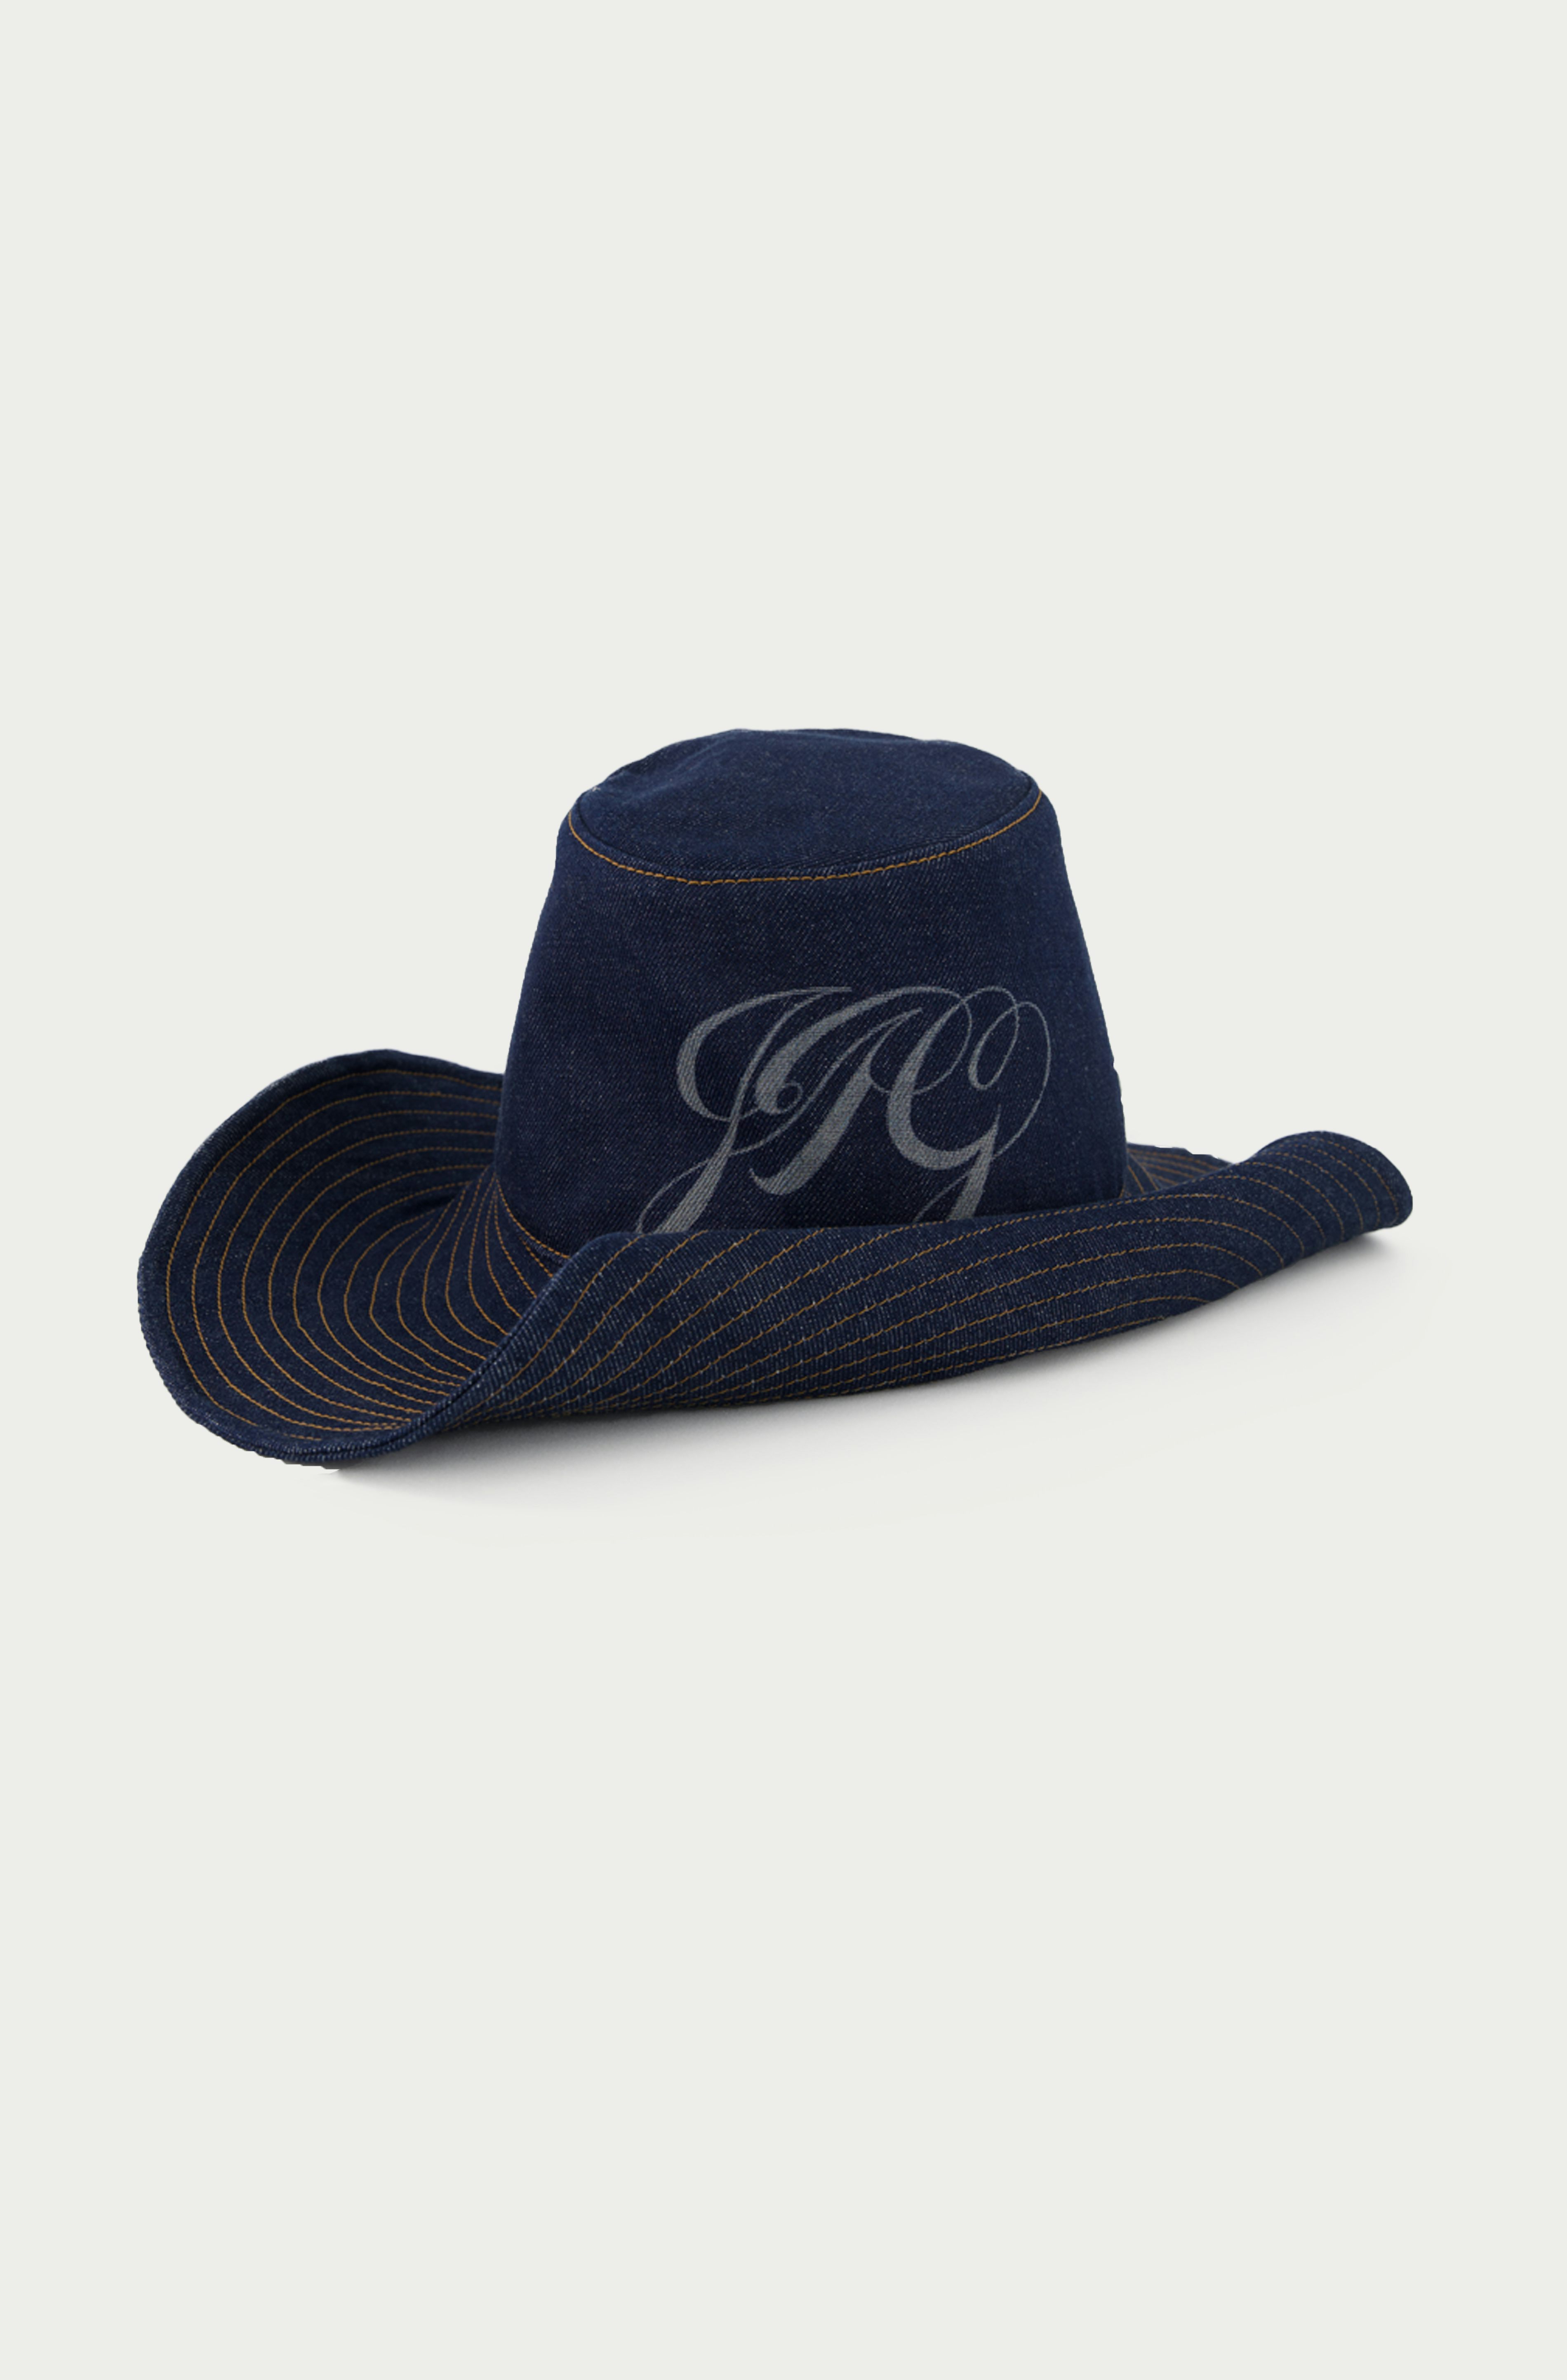 Exclusive - The JPG Bucket hat